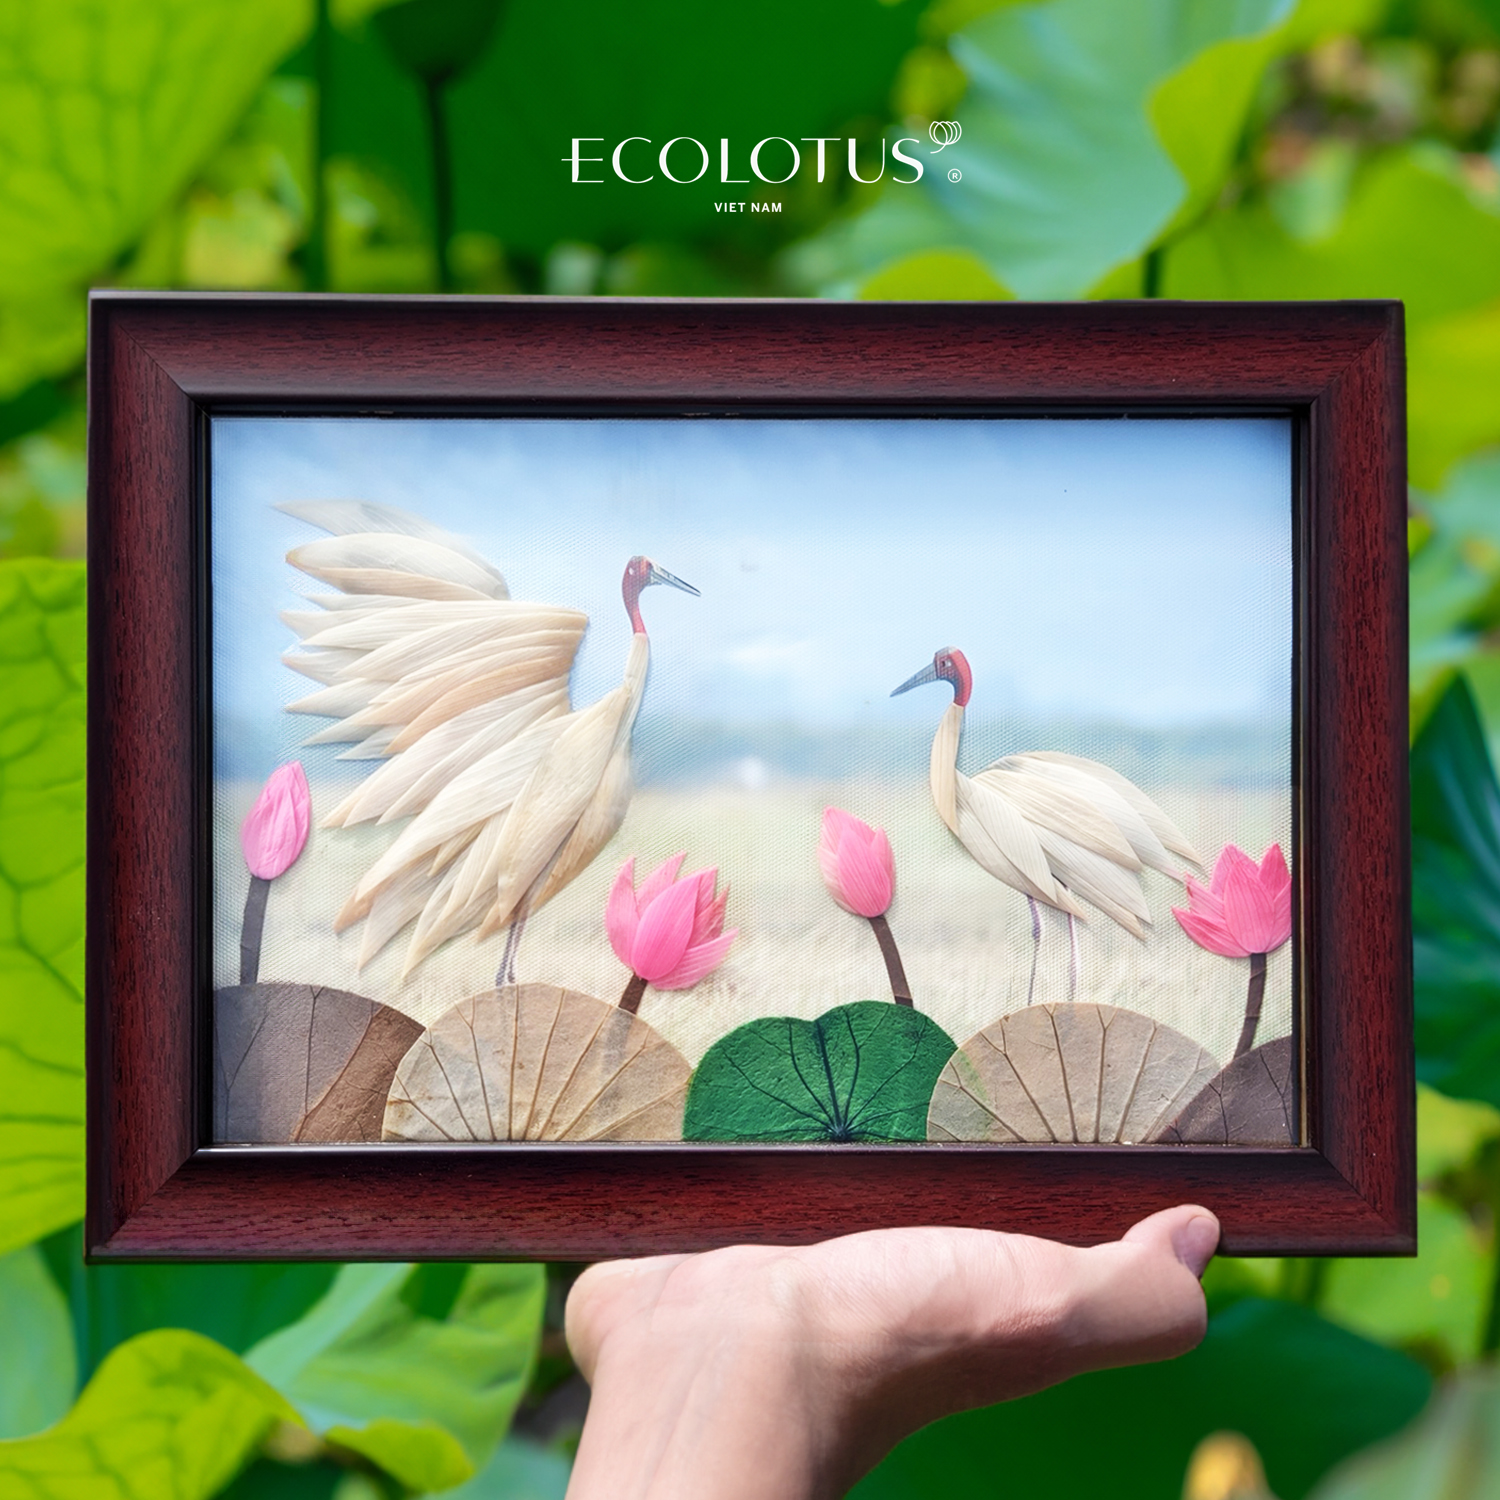 🌿 Cùng nhau khám phá sự tuyệt vời của Ecolotus với Tranh Sếu 2D (20x30 cm)🌿